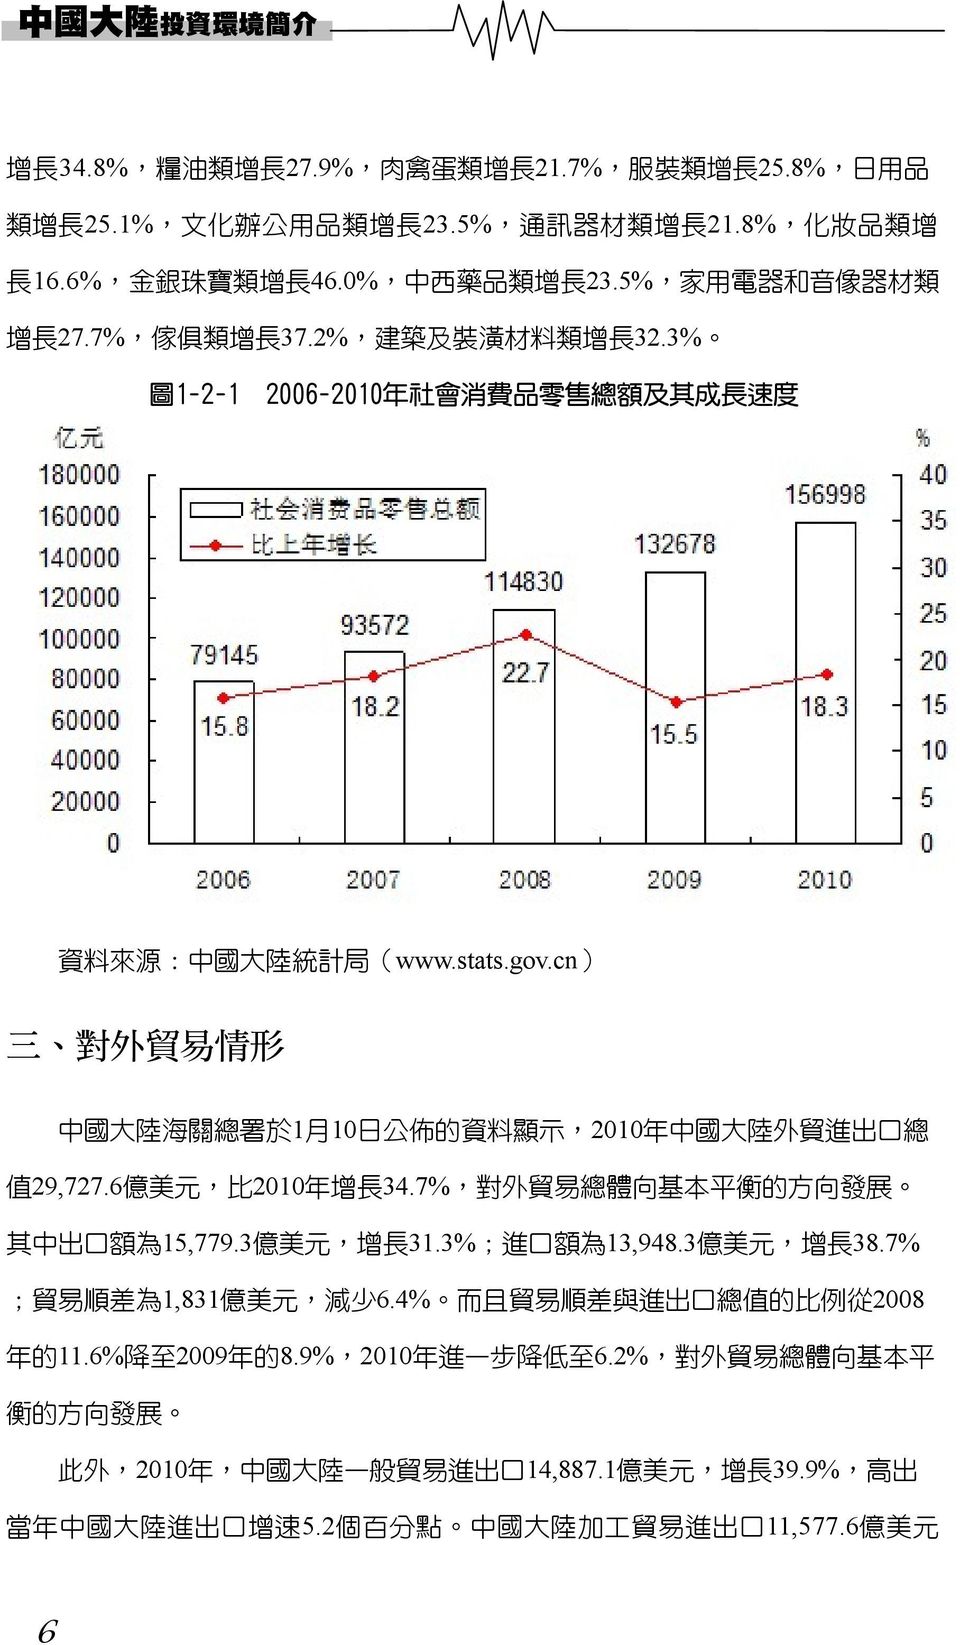 cn) 三 對 外 貿 易 情 形 中 國 大 陸 海 關 總 署 於 1 月 10 日 公 佈 的 資 料 顯 示,2010 年 中 國 大 陸 外 貿 進 出 口 總 值 29,727.6 億 美 元, 比 2010 年 增 長 34.7%, 對 外 貿 易 總 體 向 基 本 平 衡 的 方 向 發 展 其 中 出 口 額 為 15,779.3 億 美 元, 增 長 31.